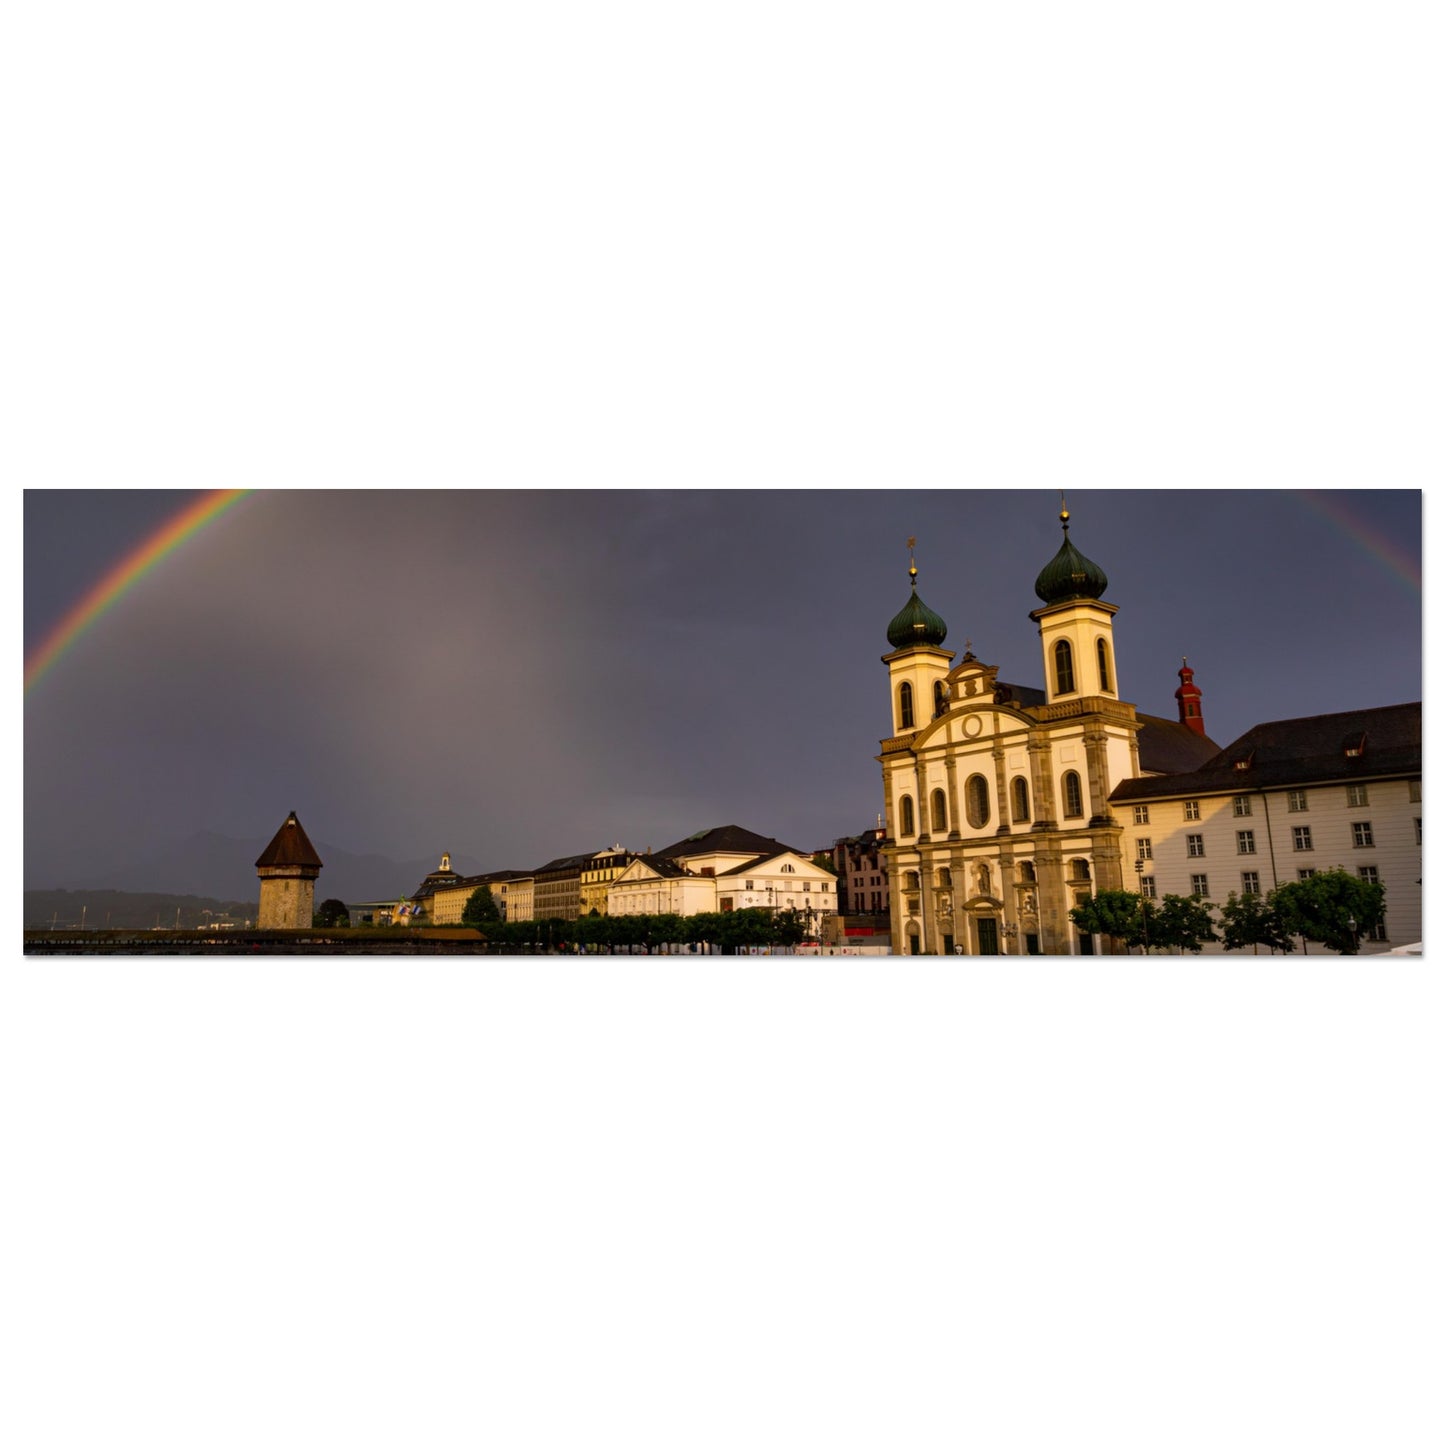 Regenbogen über Luzern - Forex-Druck